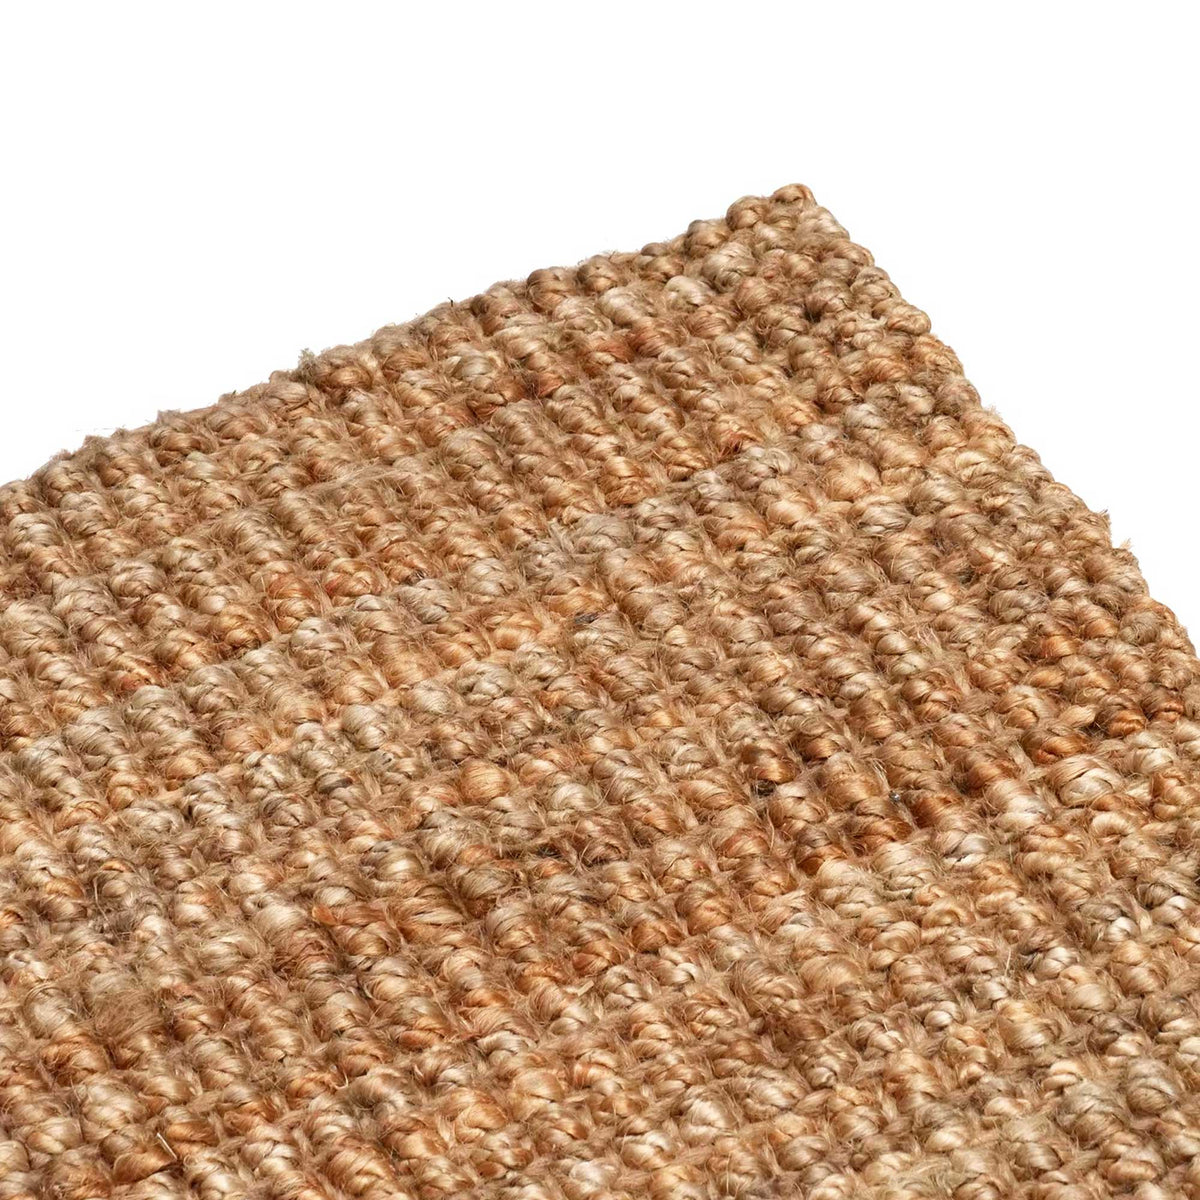 Organza Luxe Runner - Organic Handwoven Jute - Boucle Weave - Carpet Runner